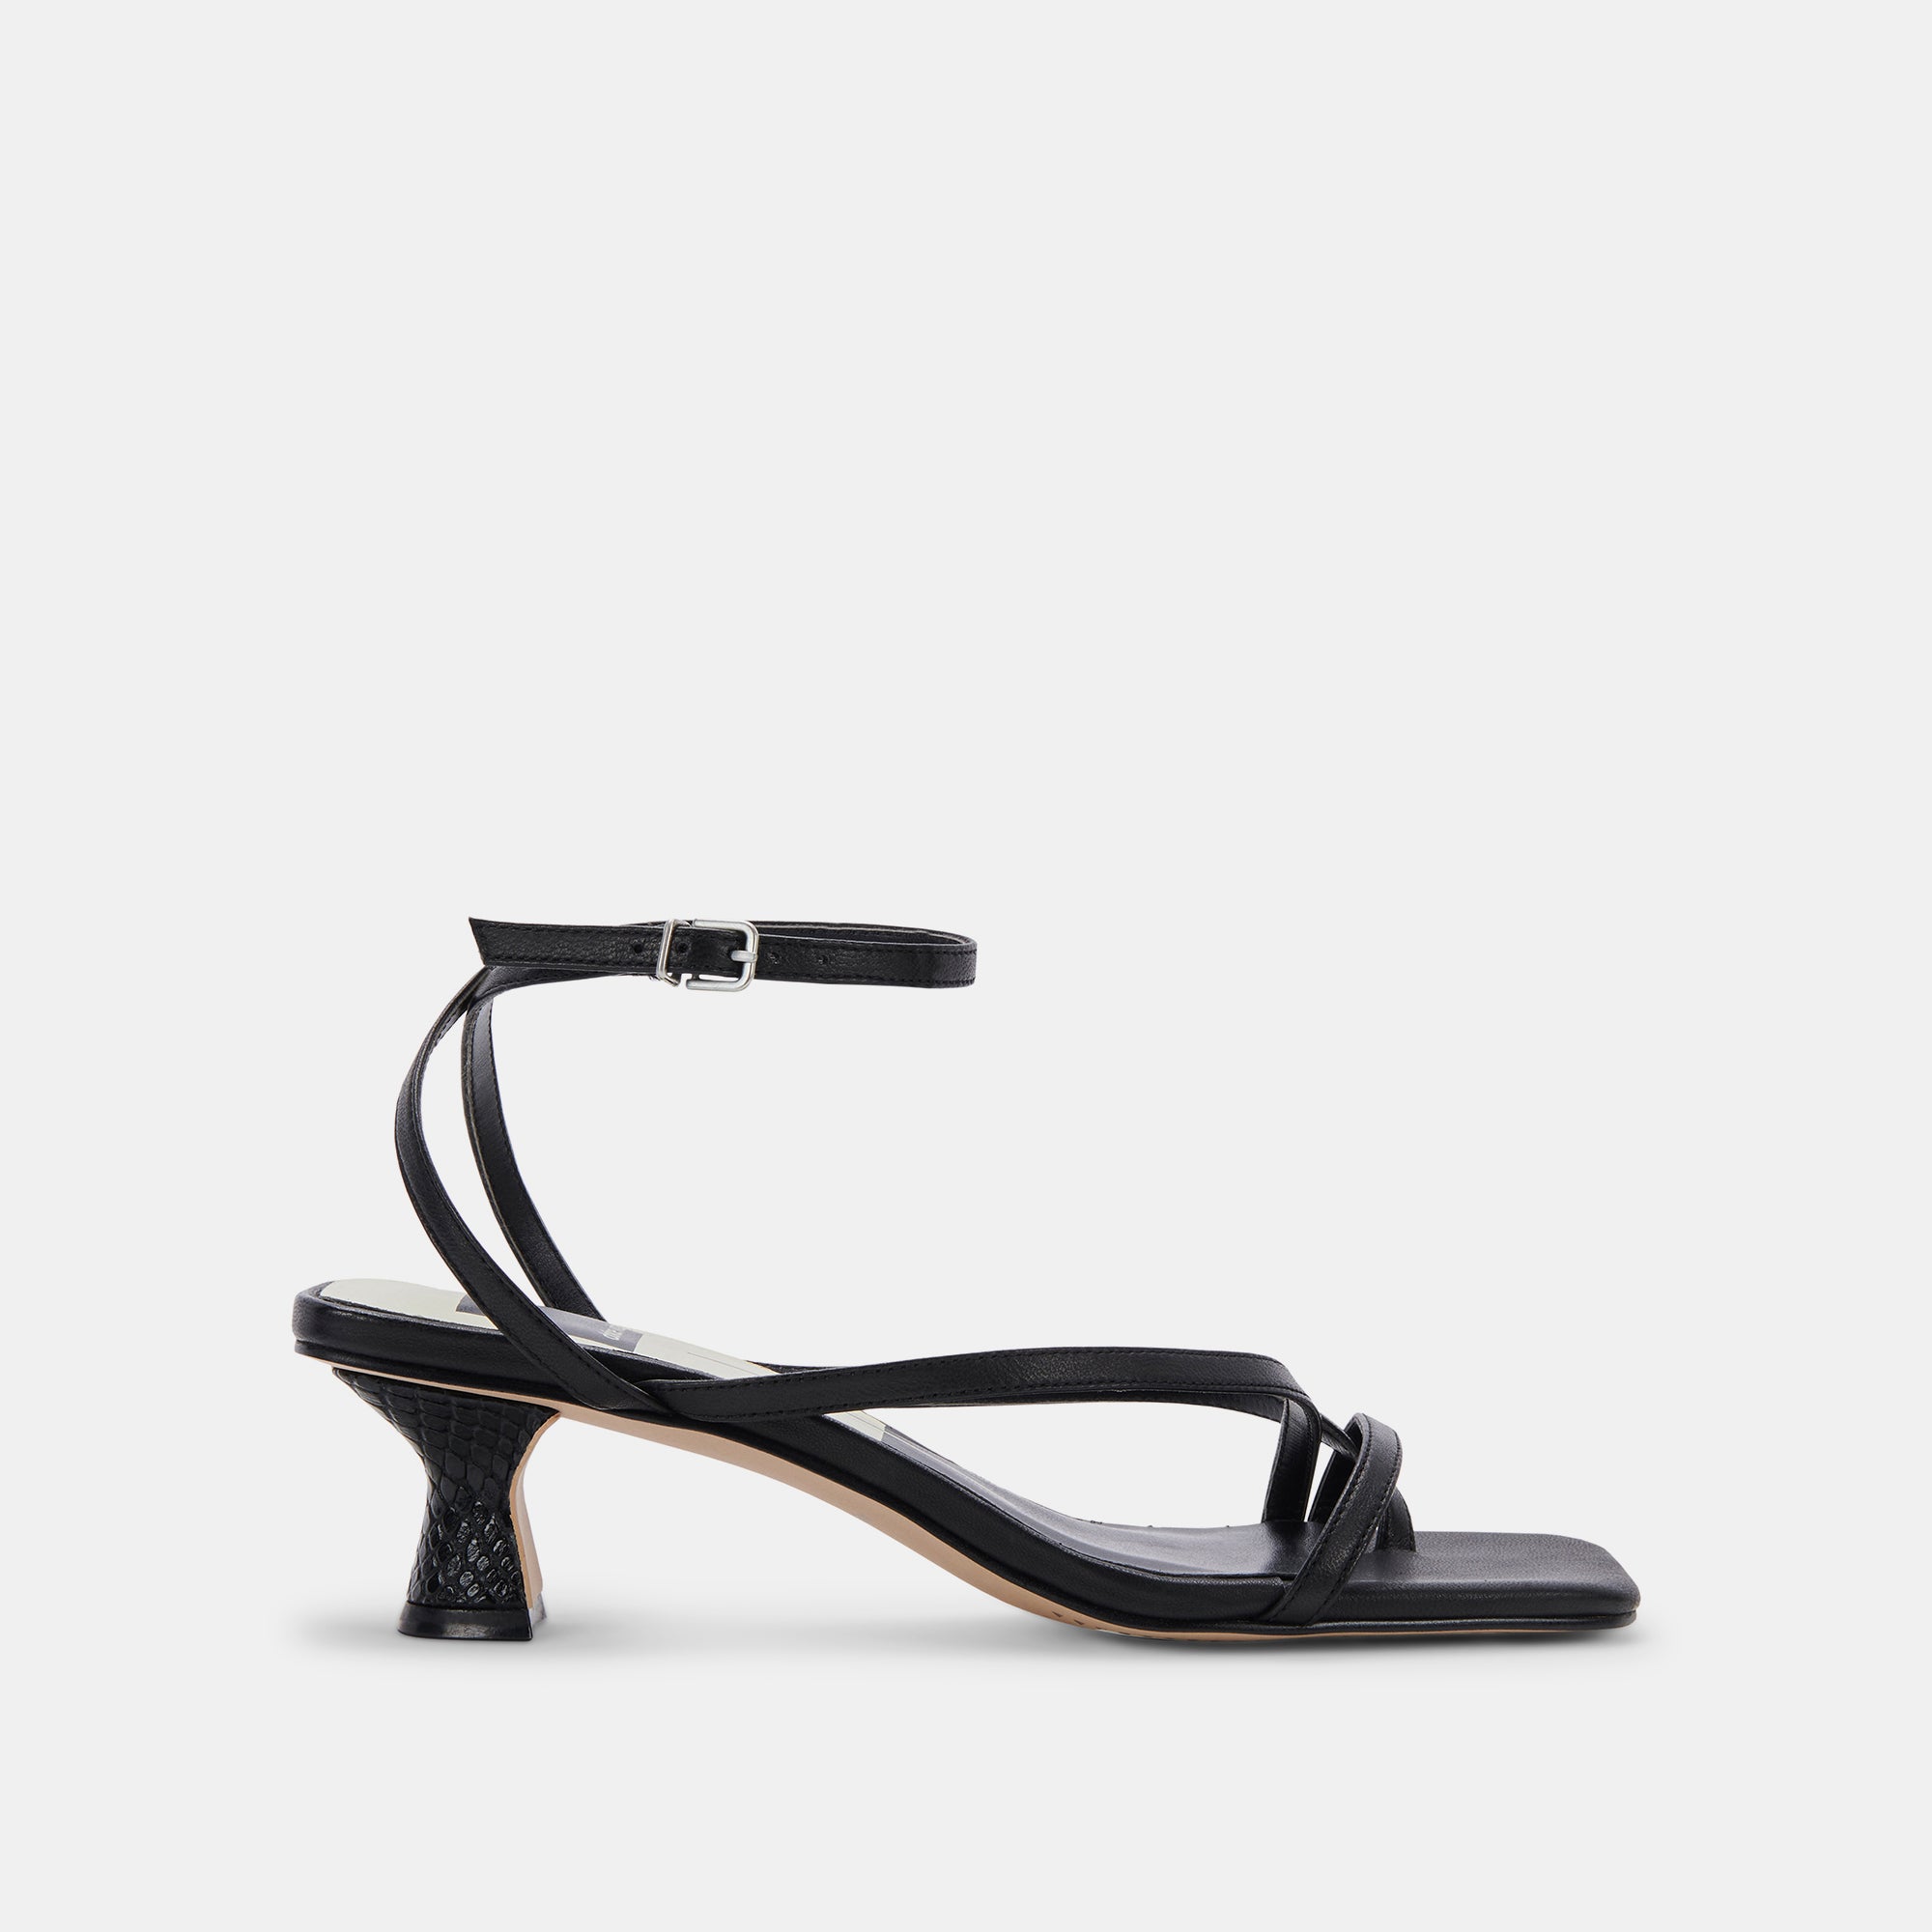 Suedette Strappy Heel Sandals - Beige or Black - Just $7